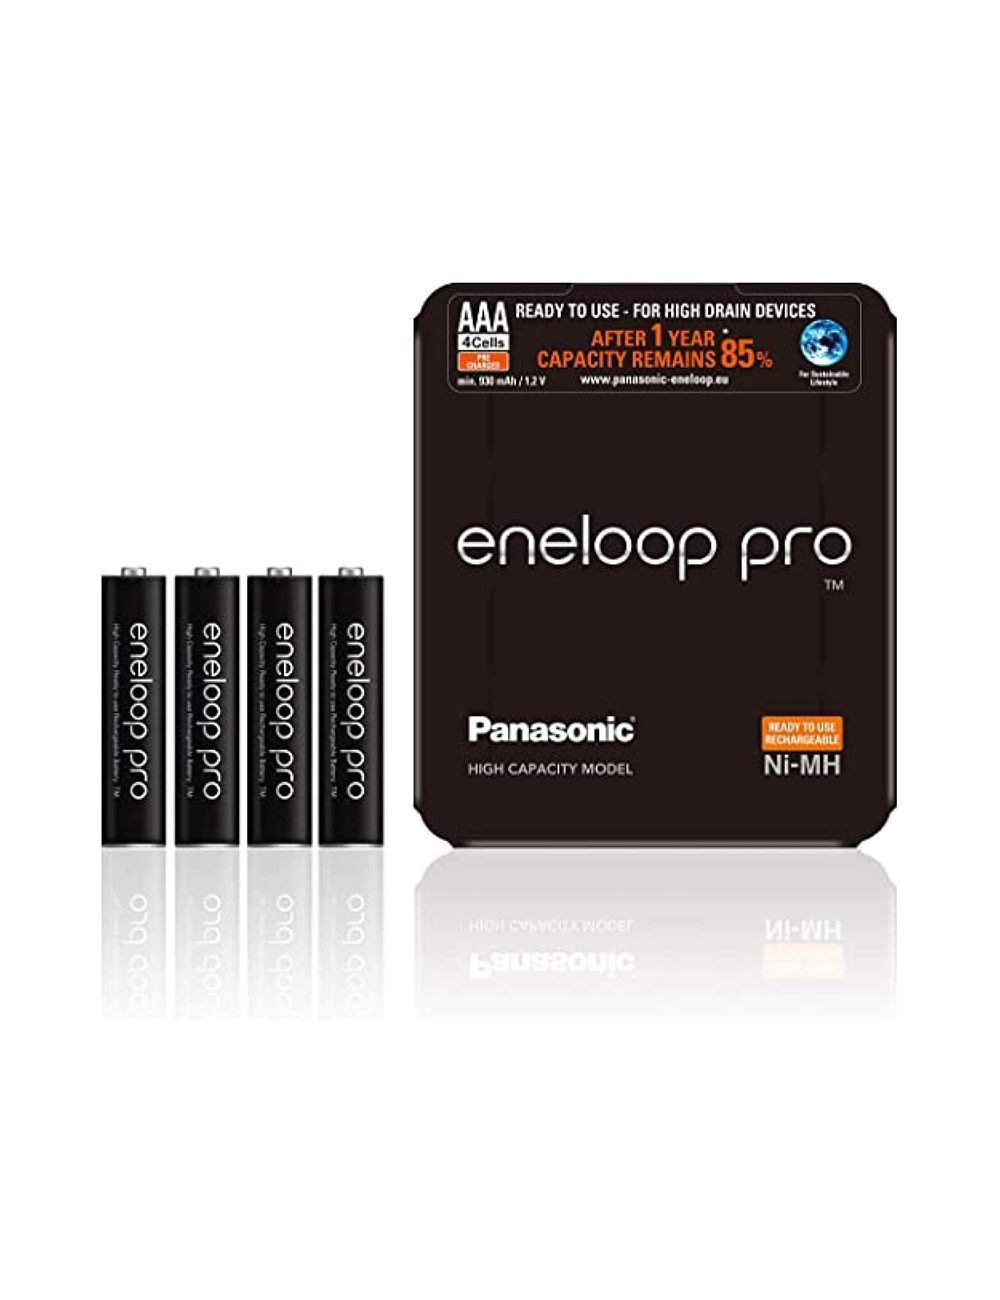 Eneloop pro pilas recargables AAA 930mAh Ni-Mh Panasonic (sliding pack 4 unidades) - BK-4HCDE/4LE -  - 5410853060628 - 1